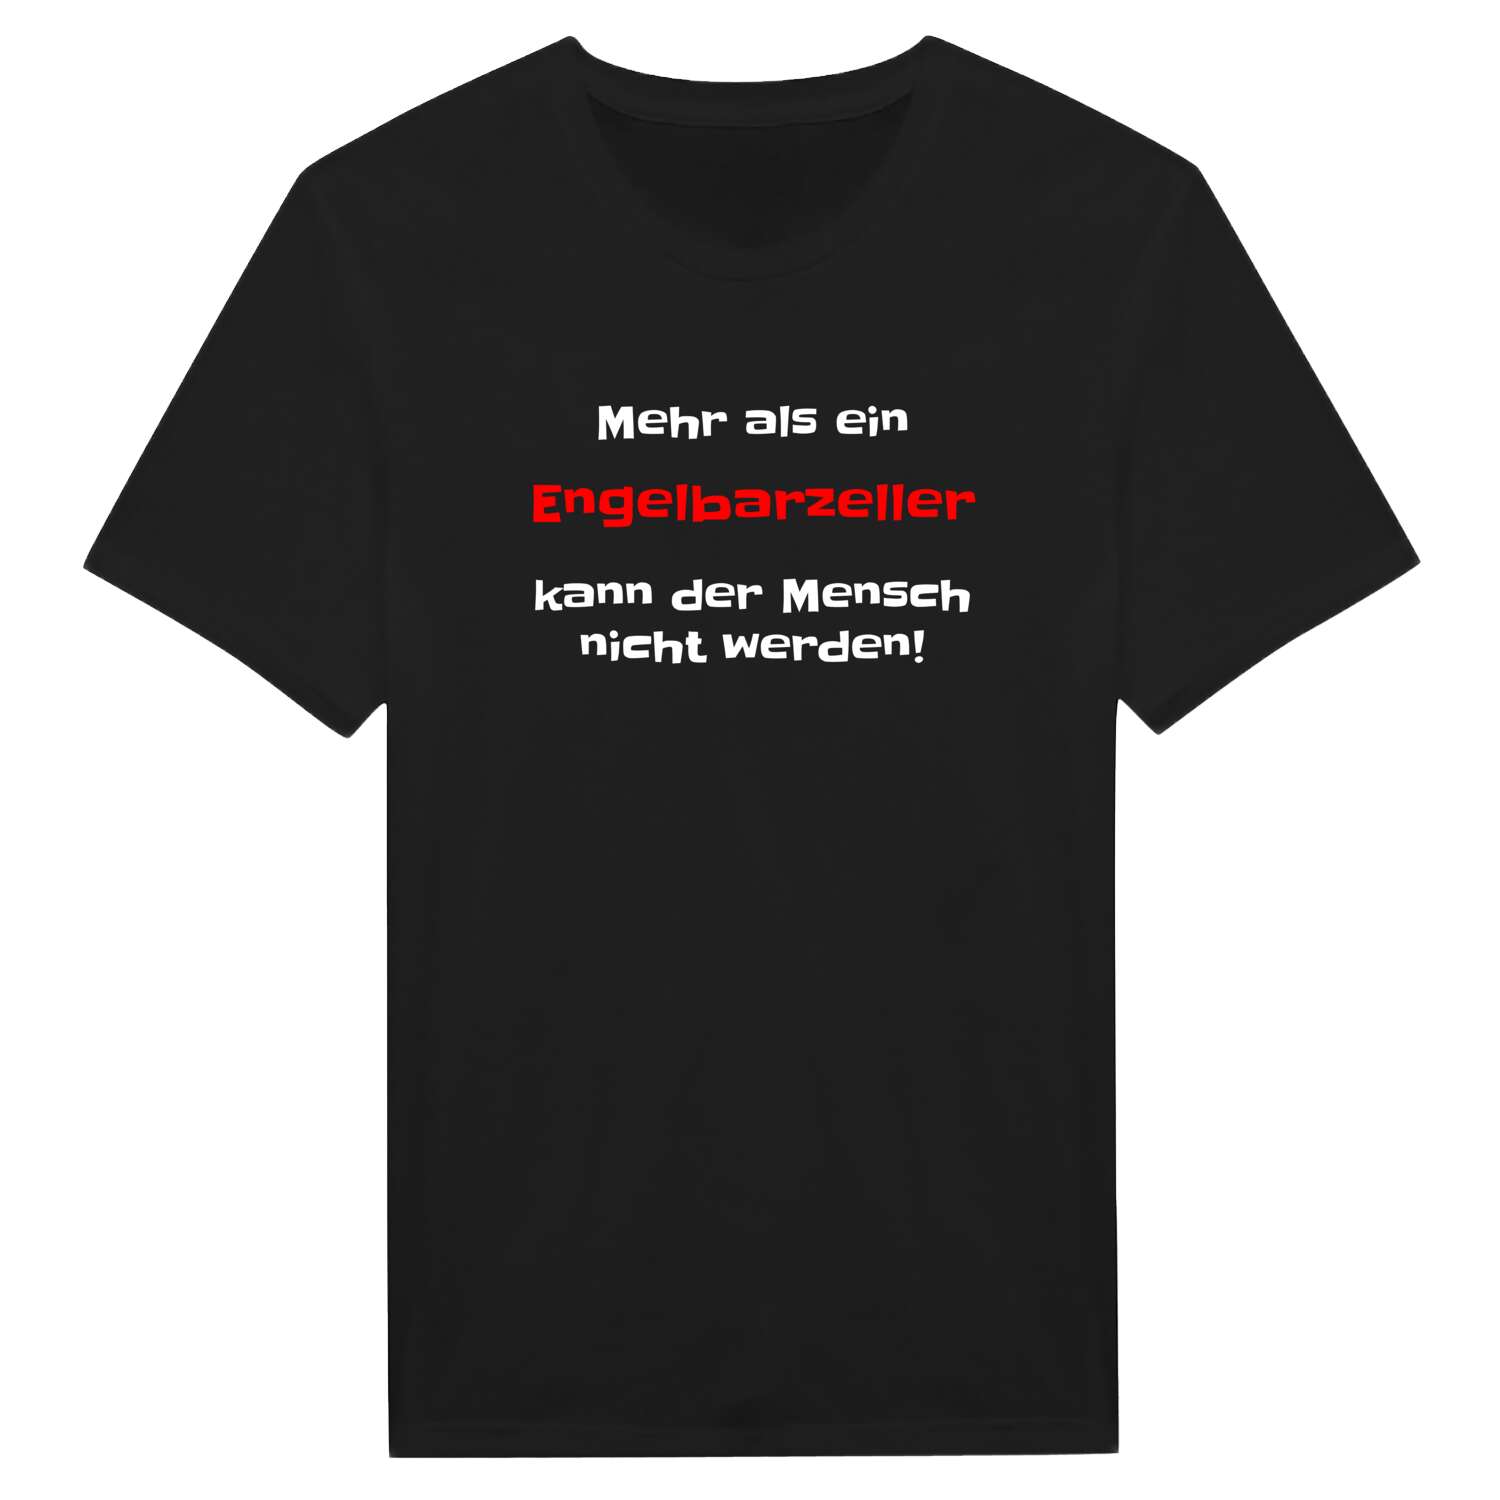 Engelbarzell T-Shirt »Mehr als ein«